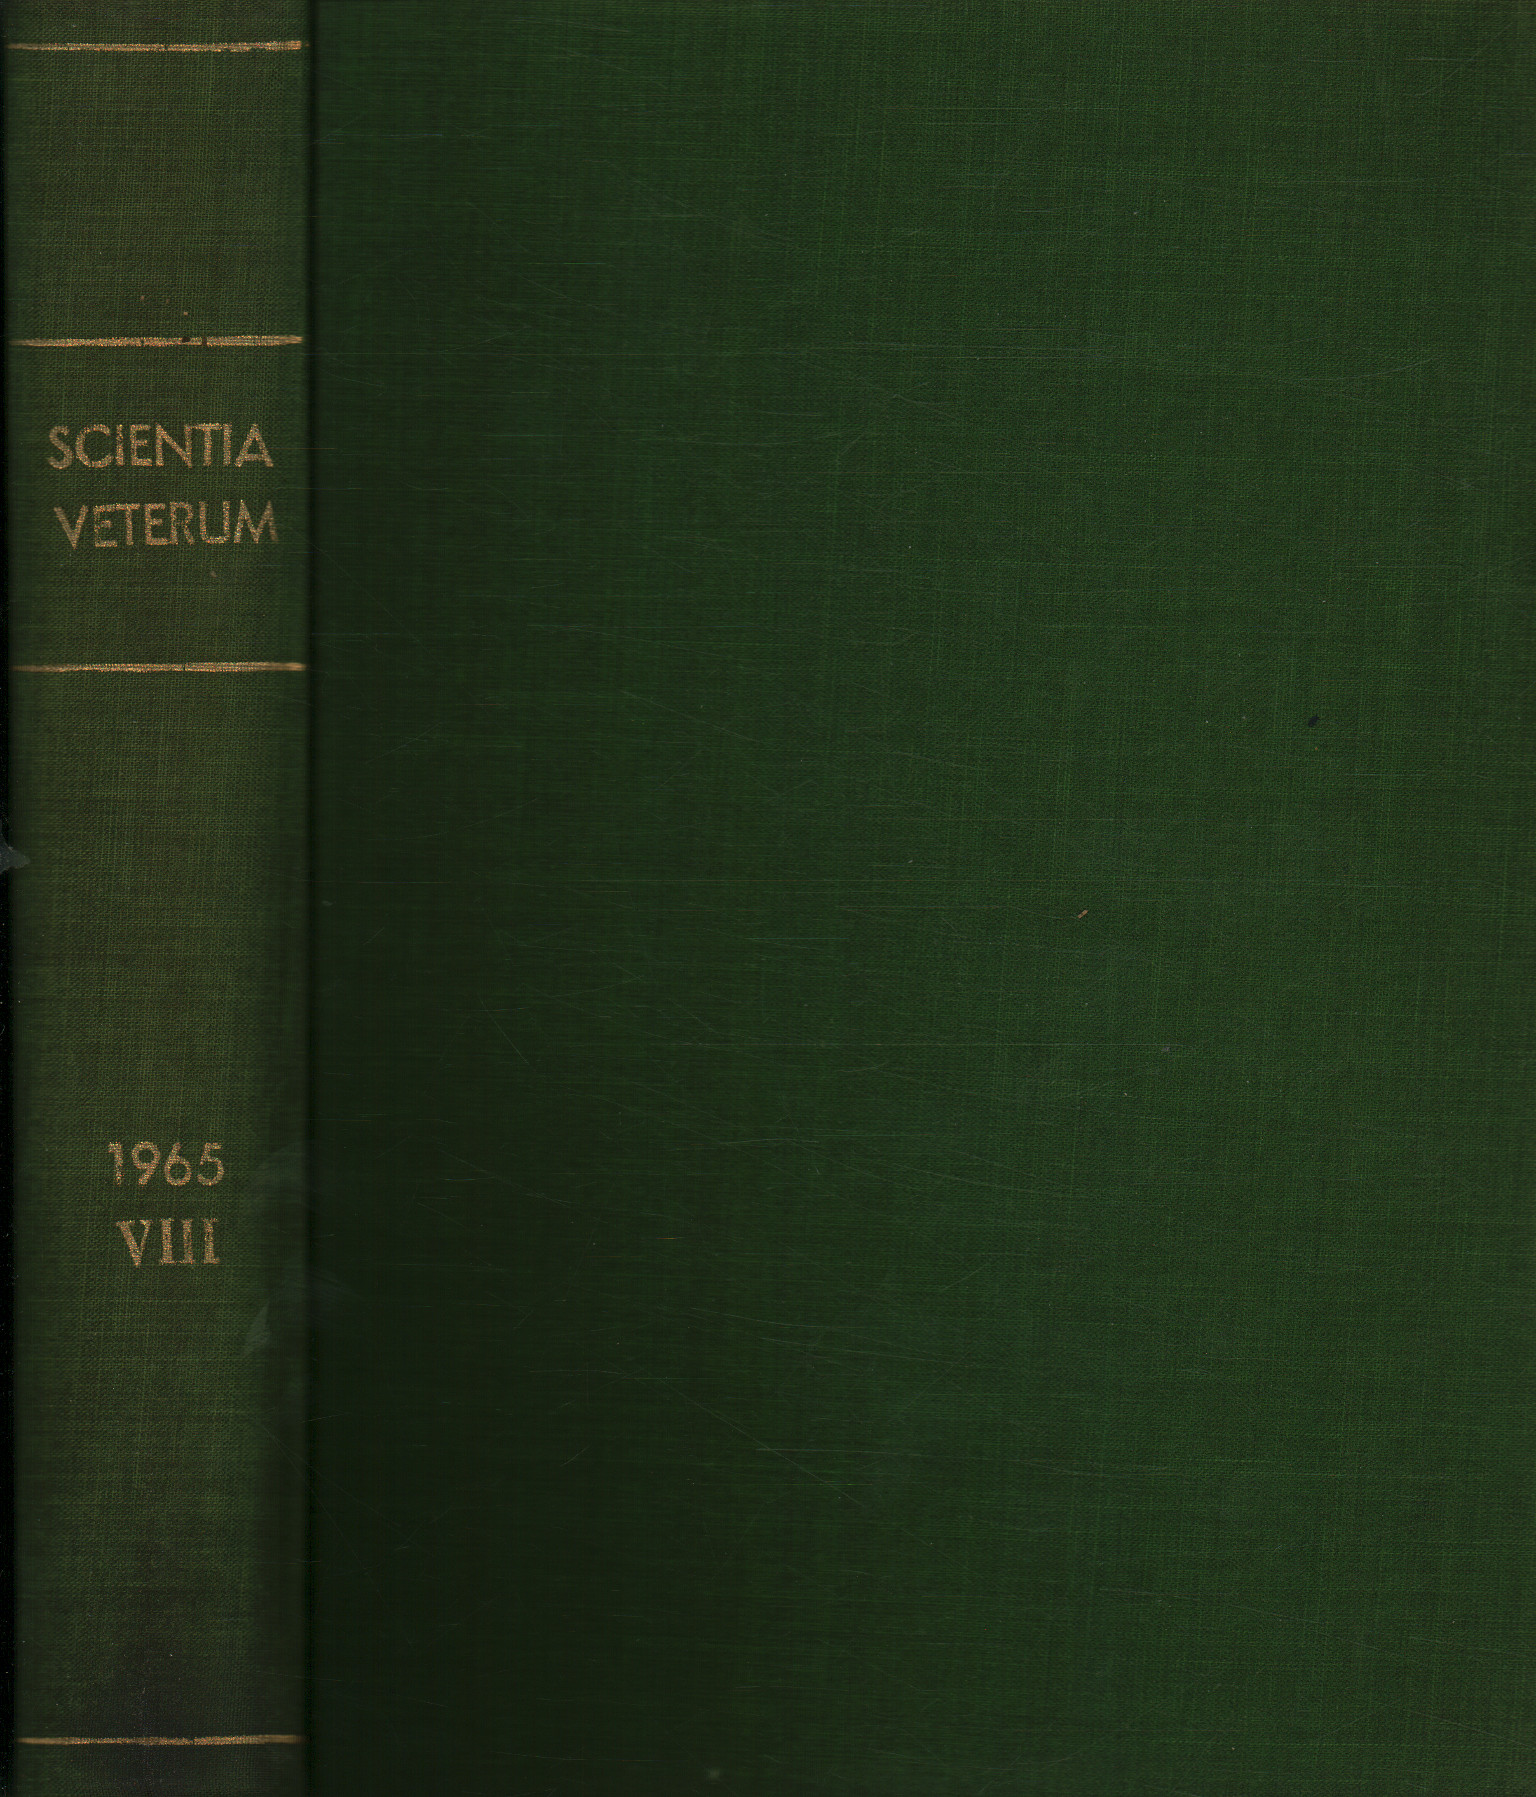 Scientia Veterum. Series of studies by